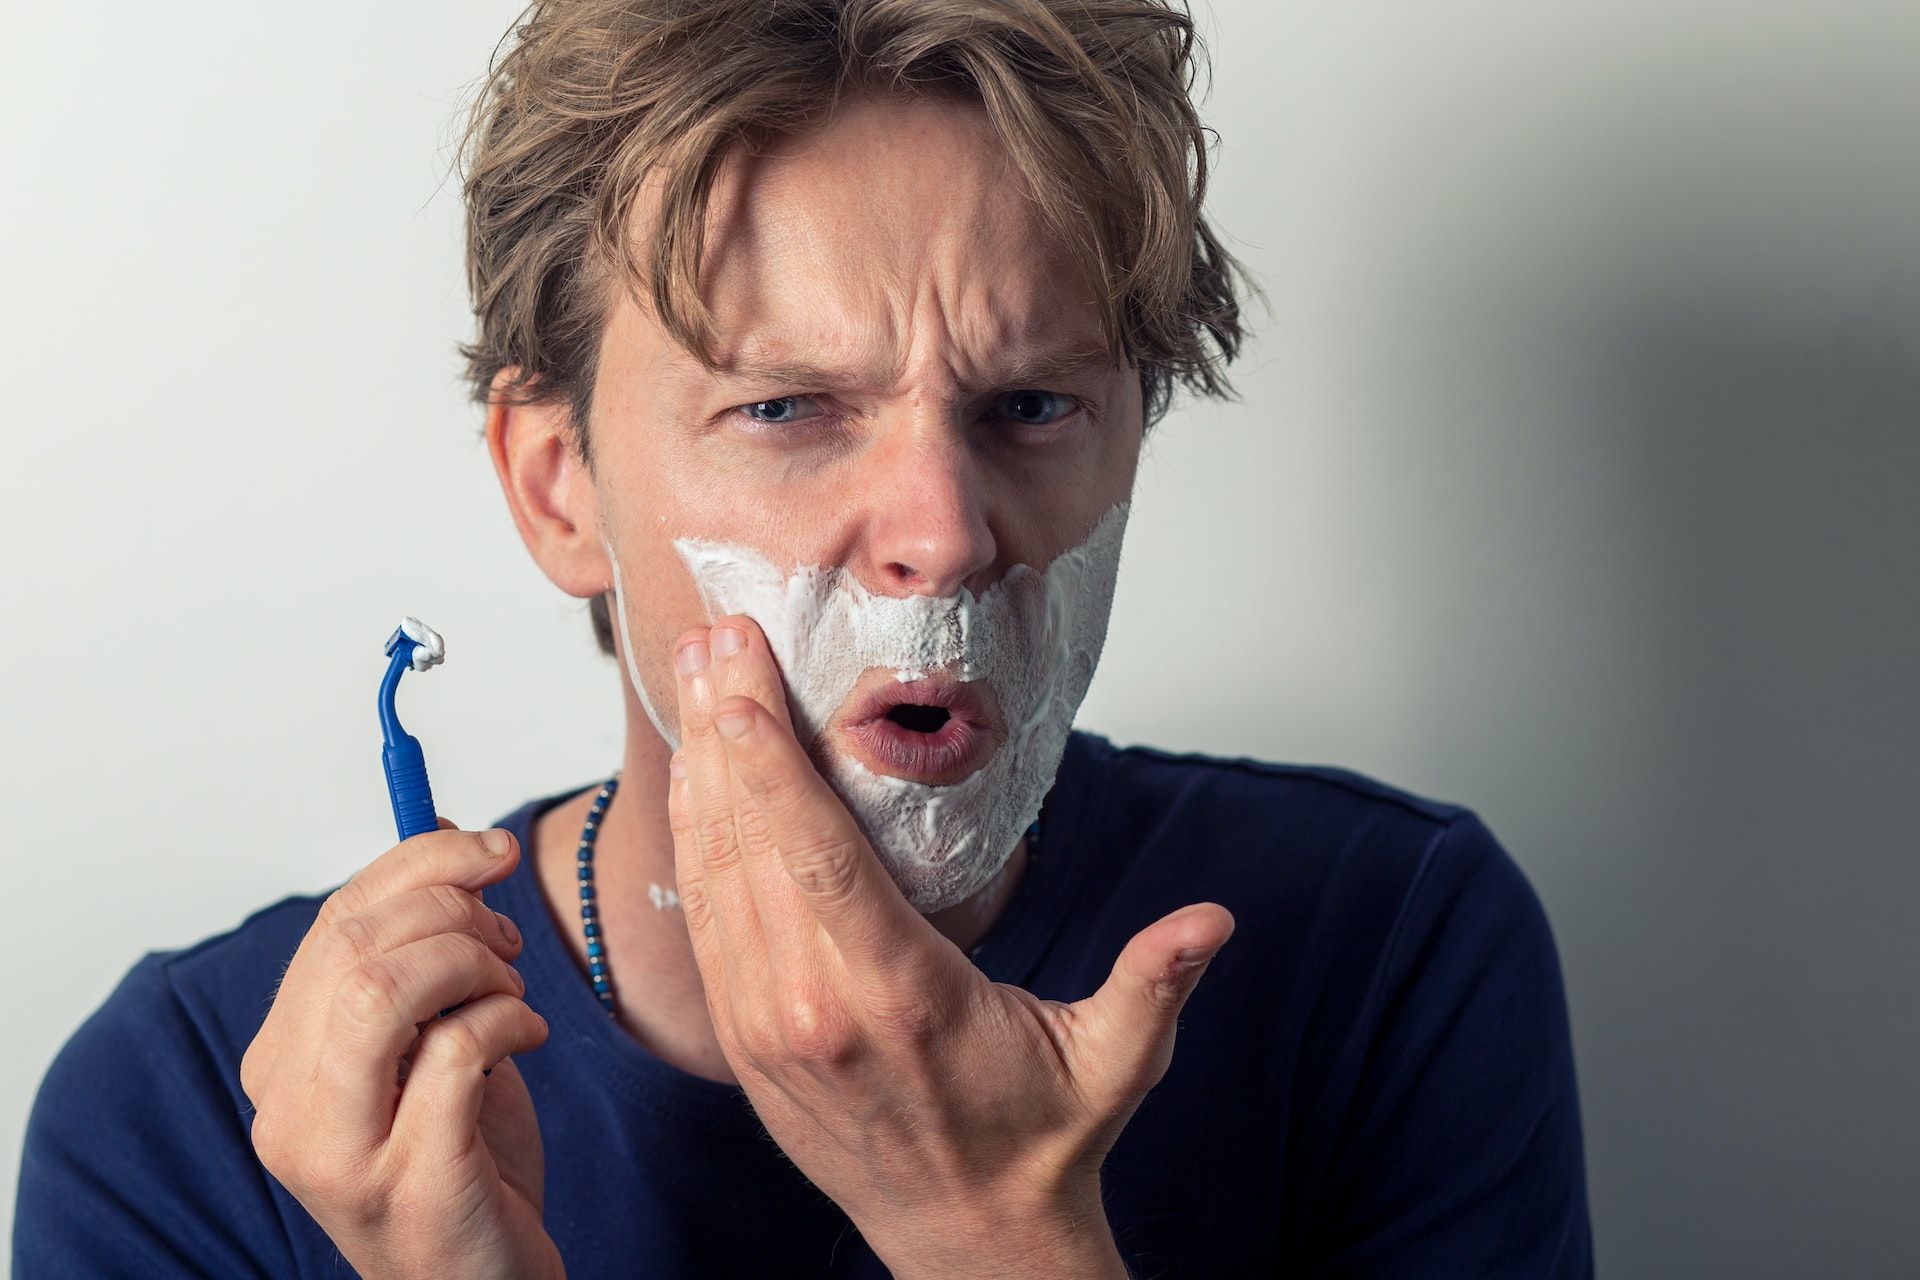 Як доглядати за бритвою - що потрібно робити, щоб не було подразнення під час гоління